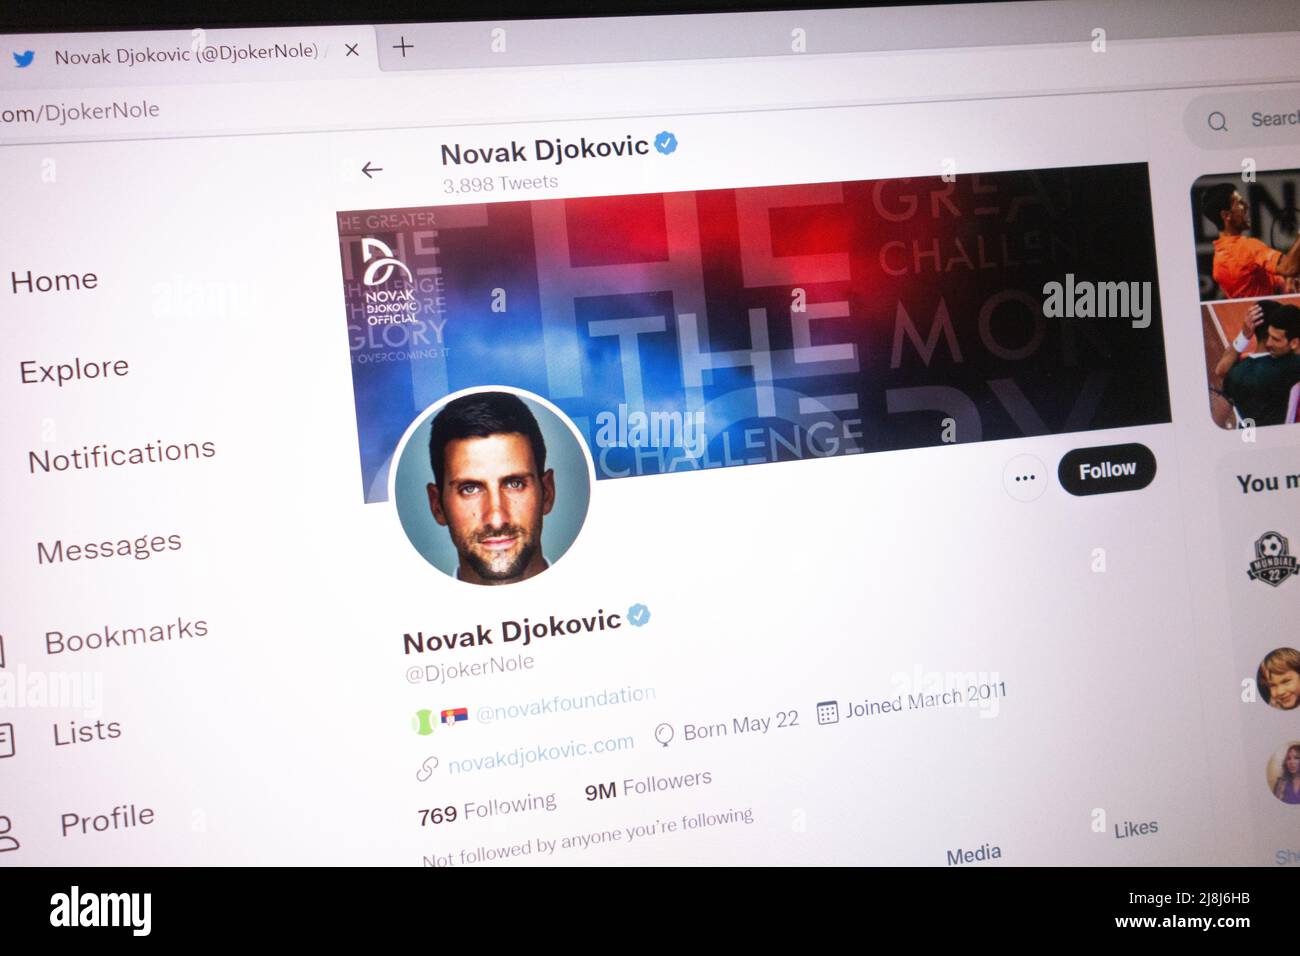 KONSKIE, POLONIA - 14 de mayo de 2022: Cuenta oficial de Novak Djokovic en Twitter mostrada en la pantalla del portátil Foto de stock